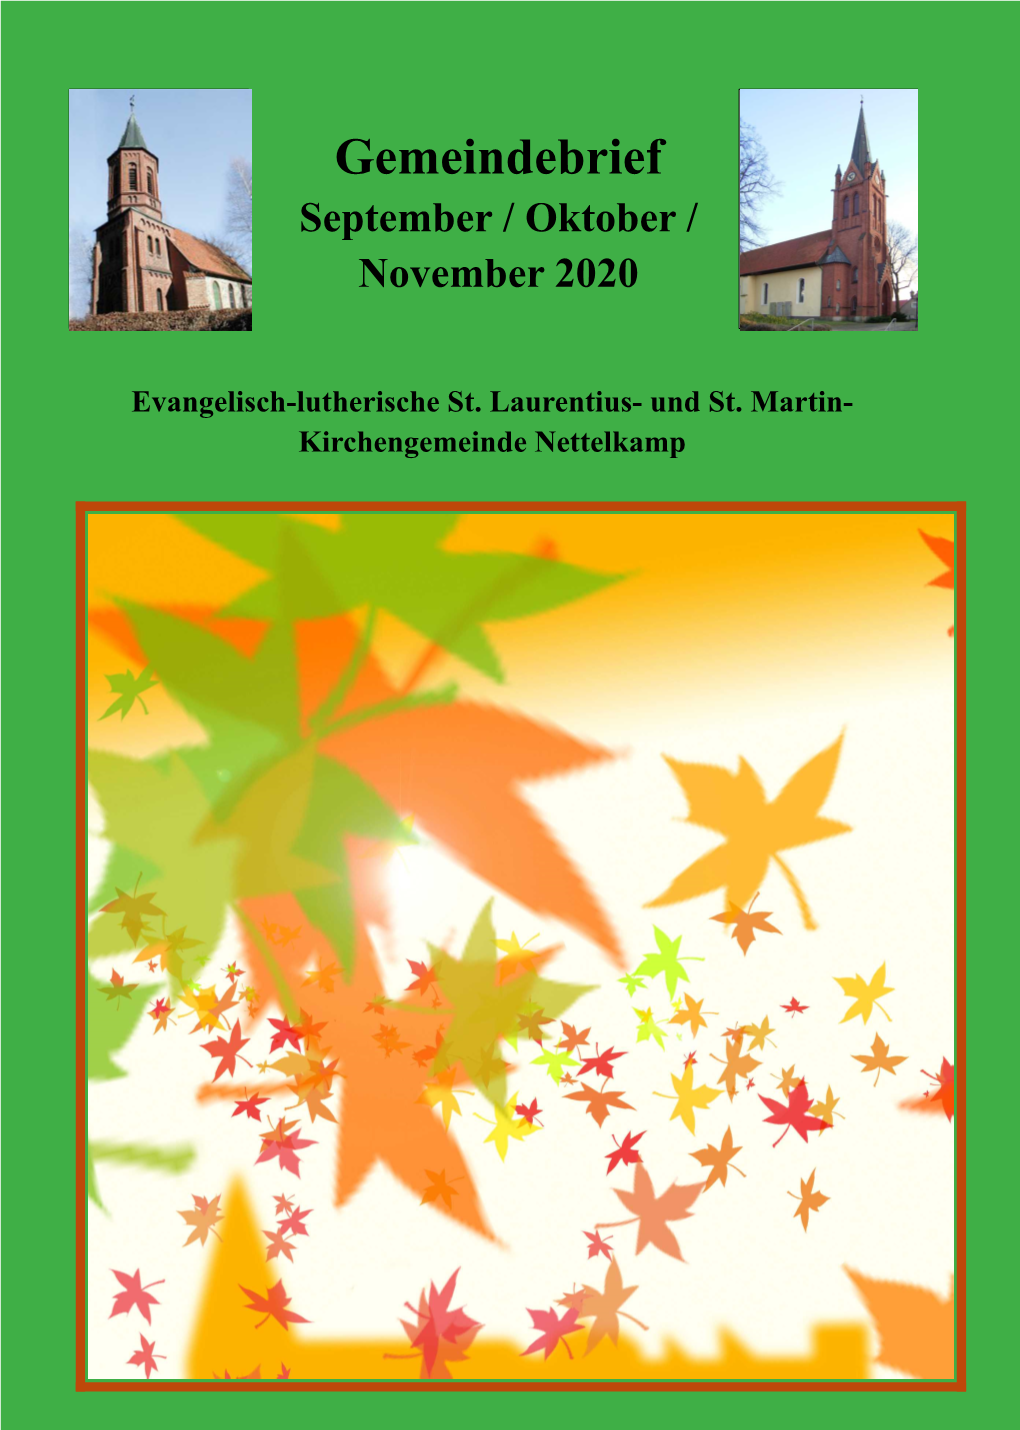 Gemeindebrief September-November 2020